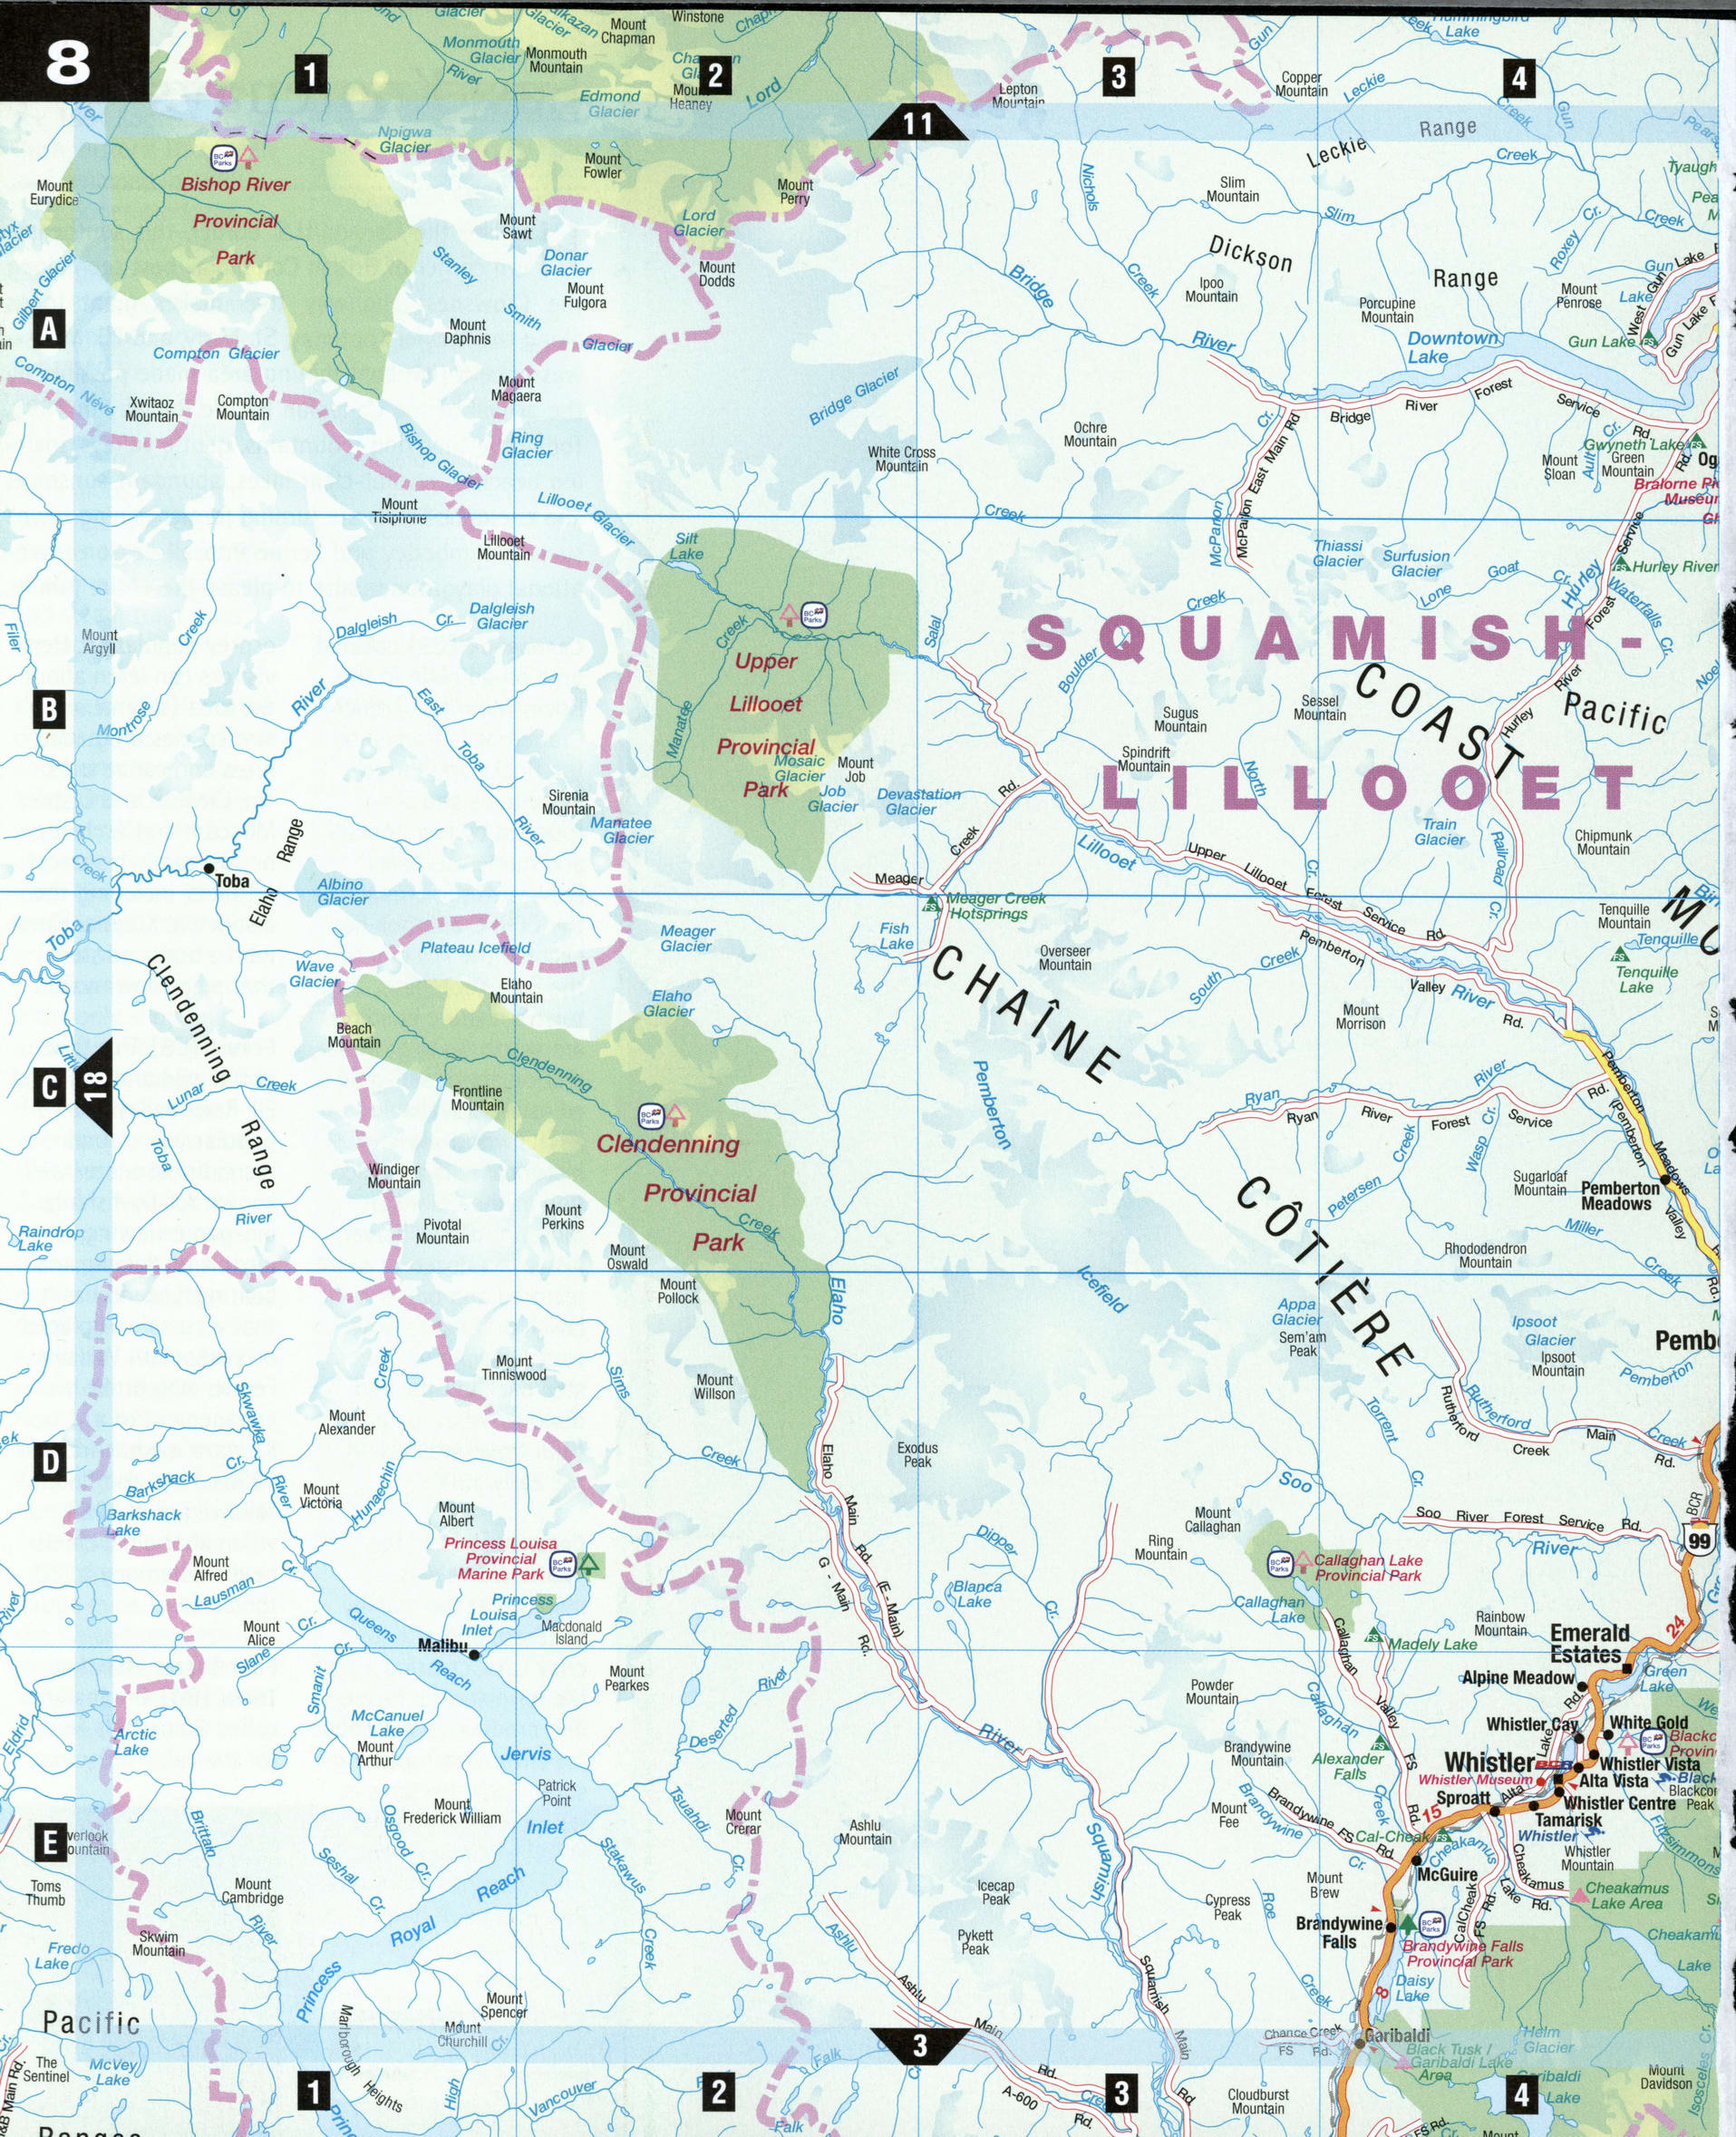 Squamish Lillooet map